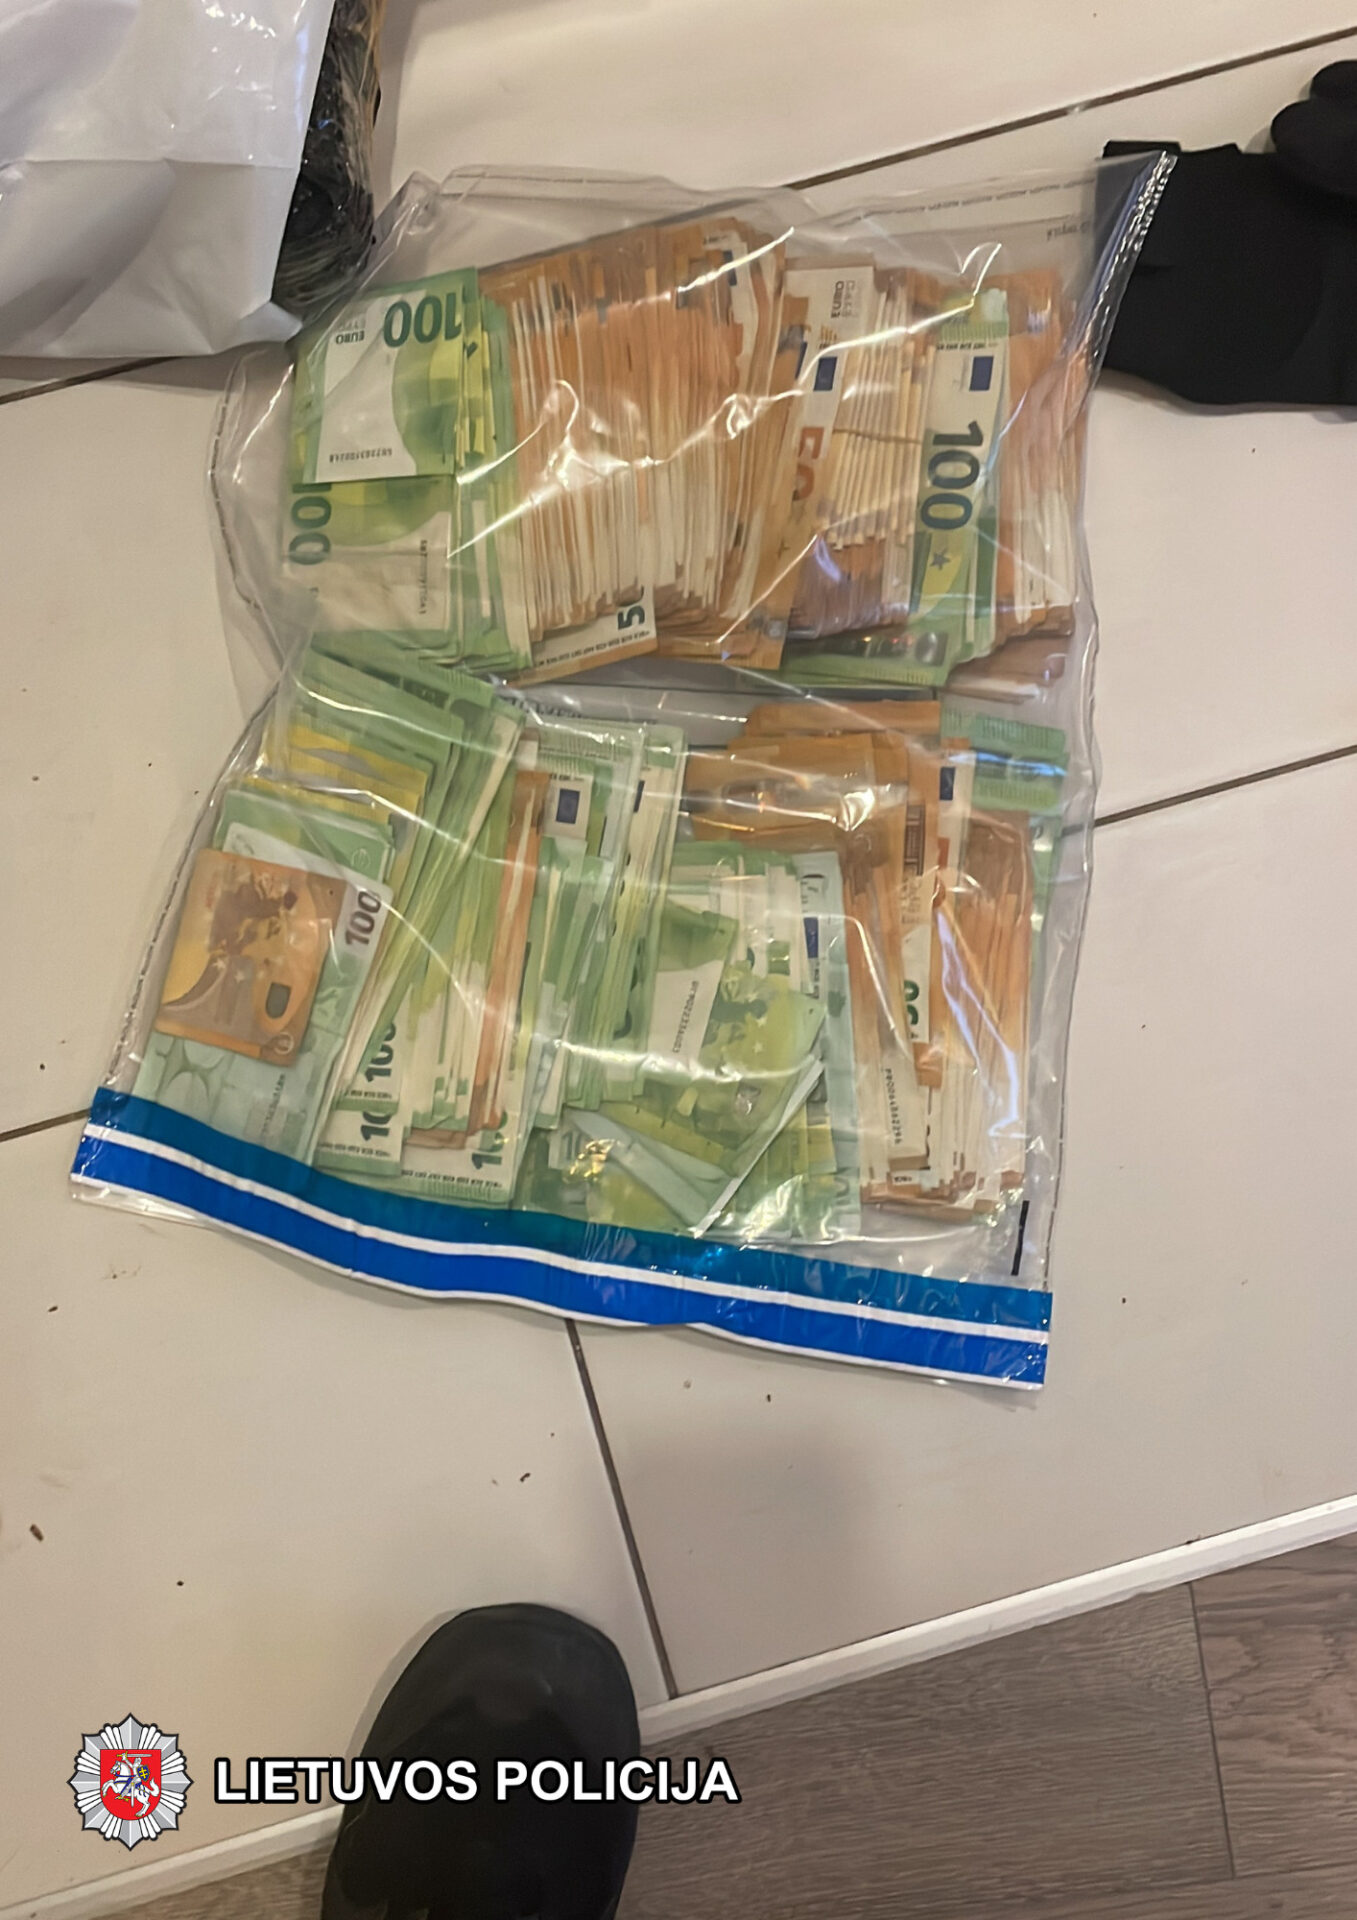 Marijampolės kriminalistai sulaikė 12 kilogramų narkotinių medžiagų bei užkirto kelią jų tiekimui į Marijampolės apskritį